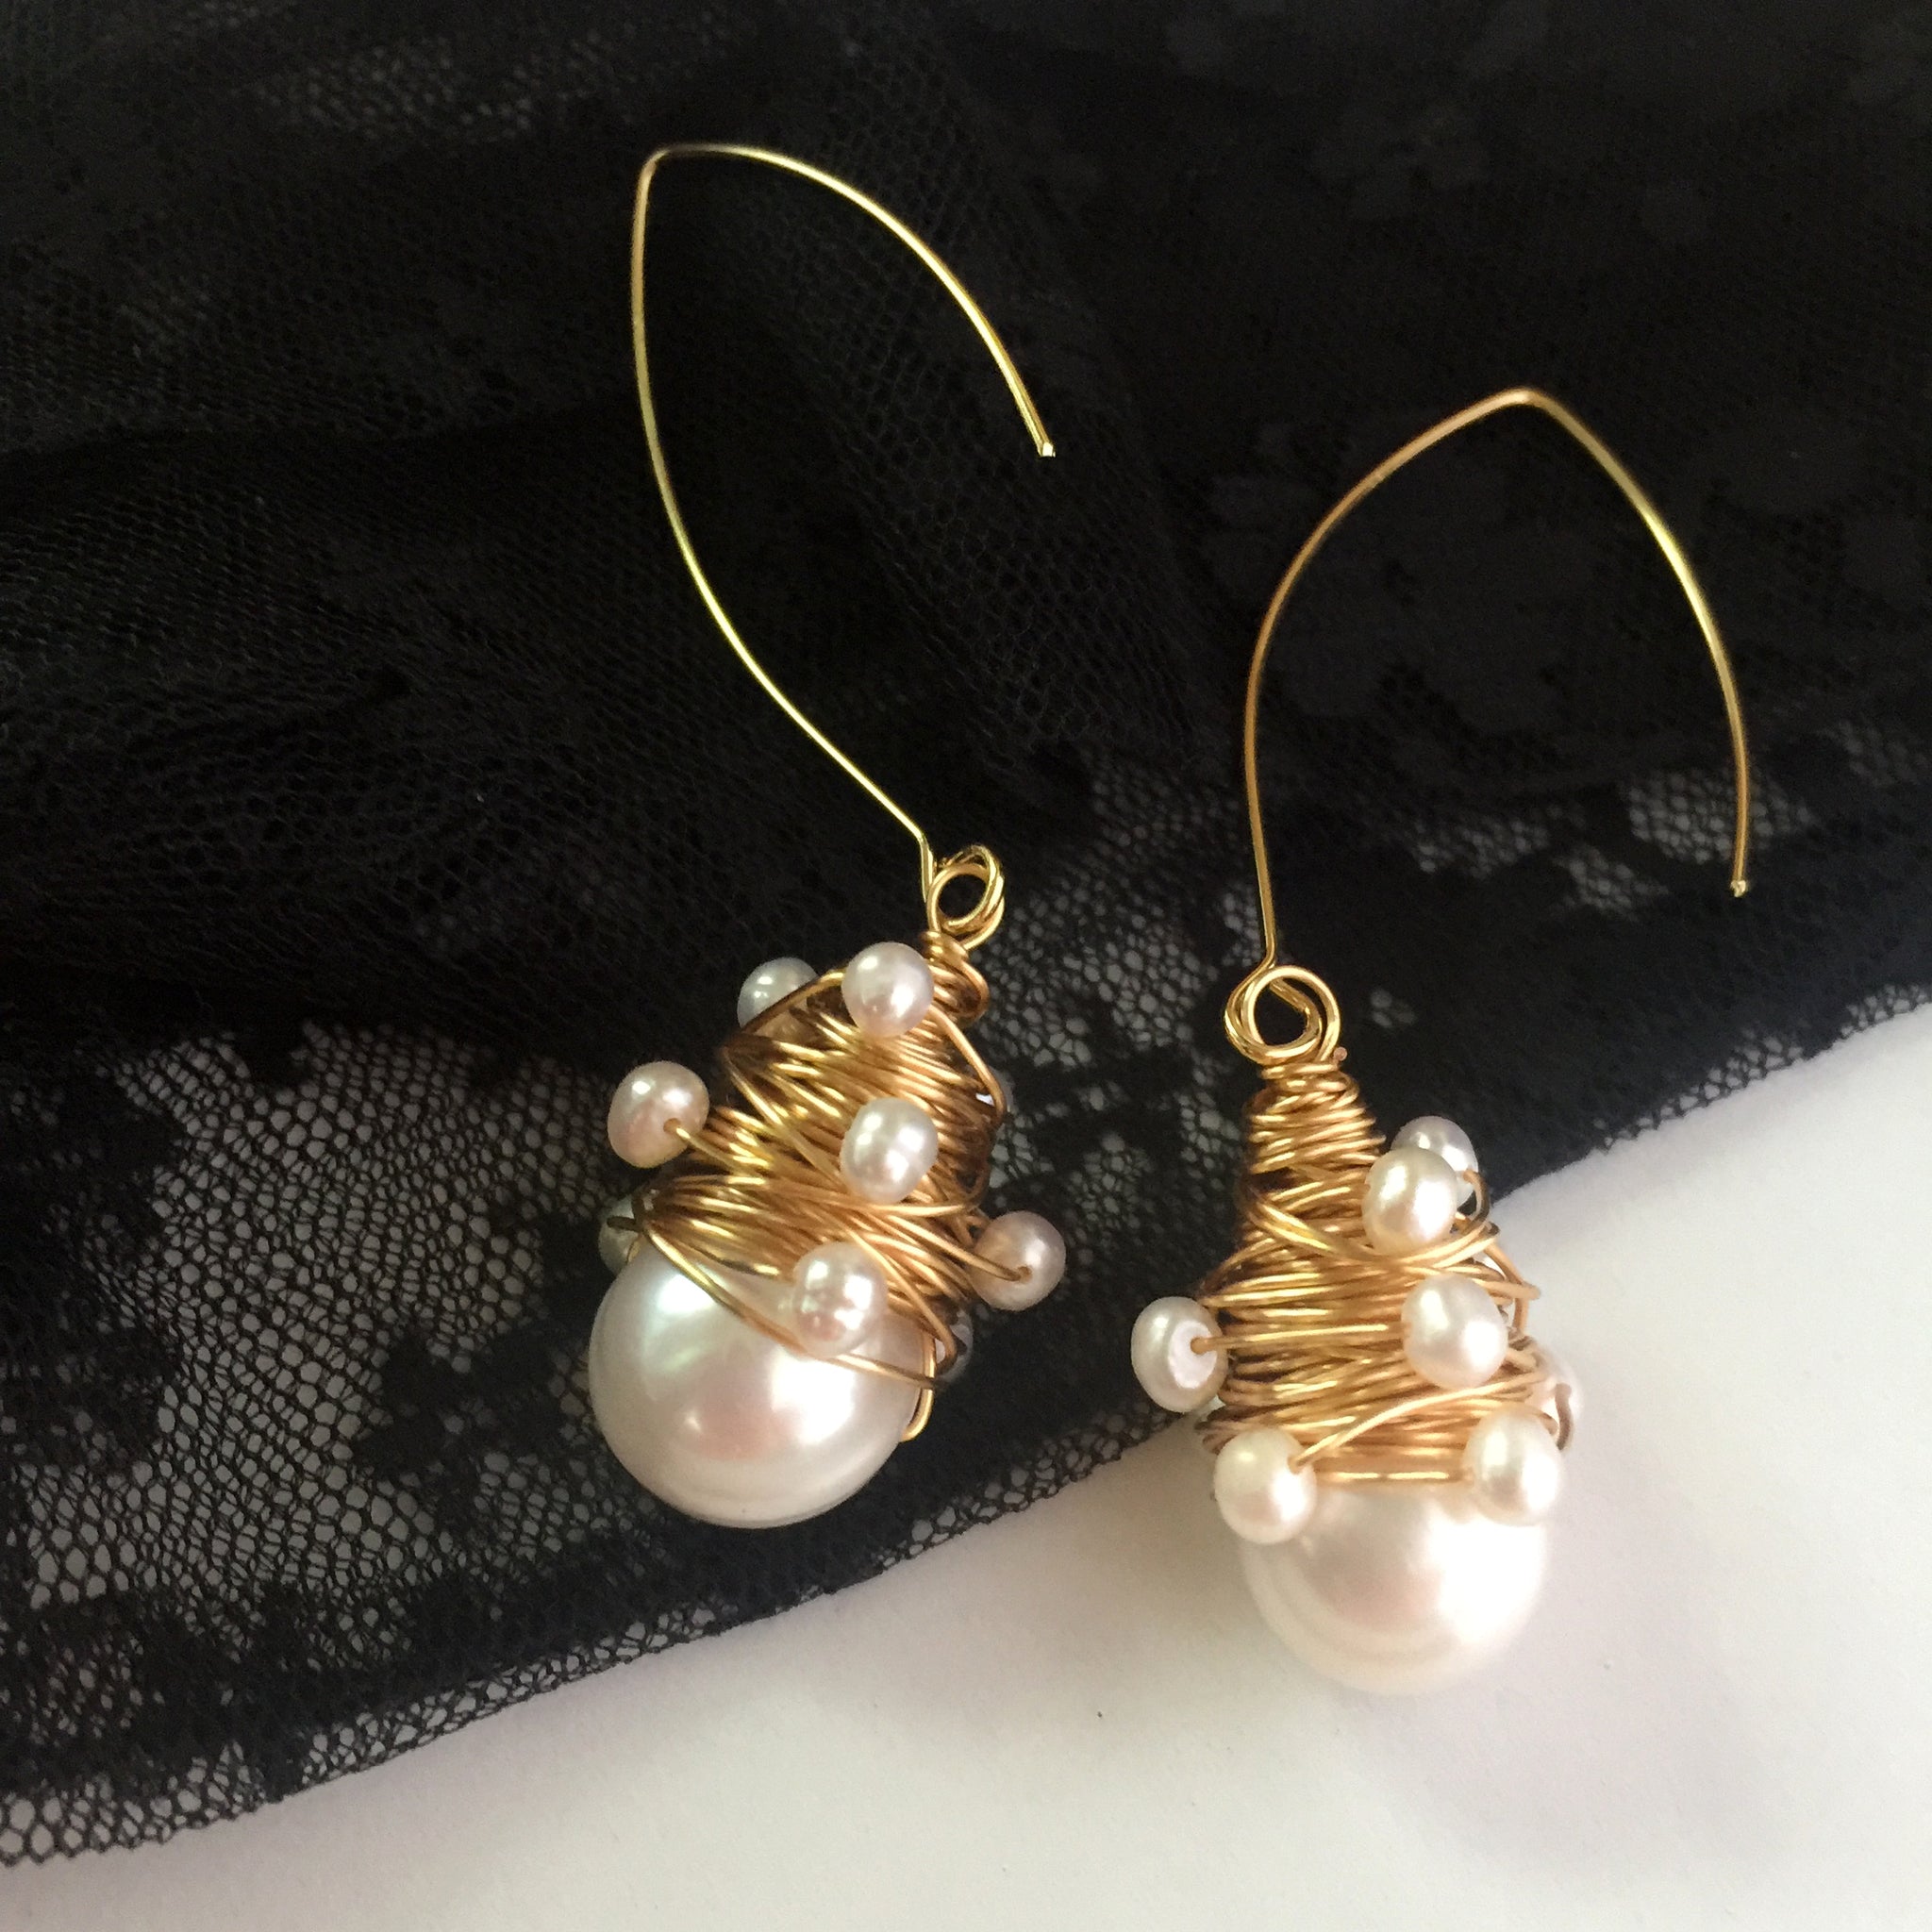 Pendientes colgantes de perlas barrocas, regalo del día de San Valentín, pendientes de perlas de boda gitana boho hippie